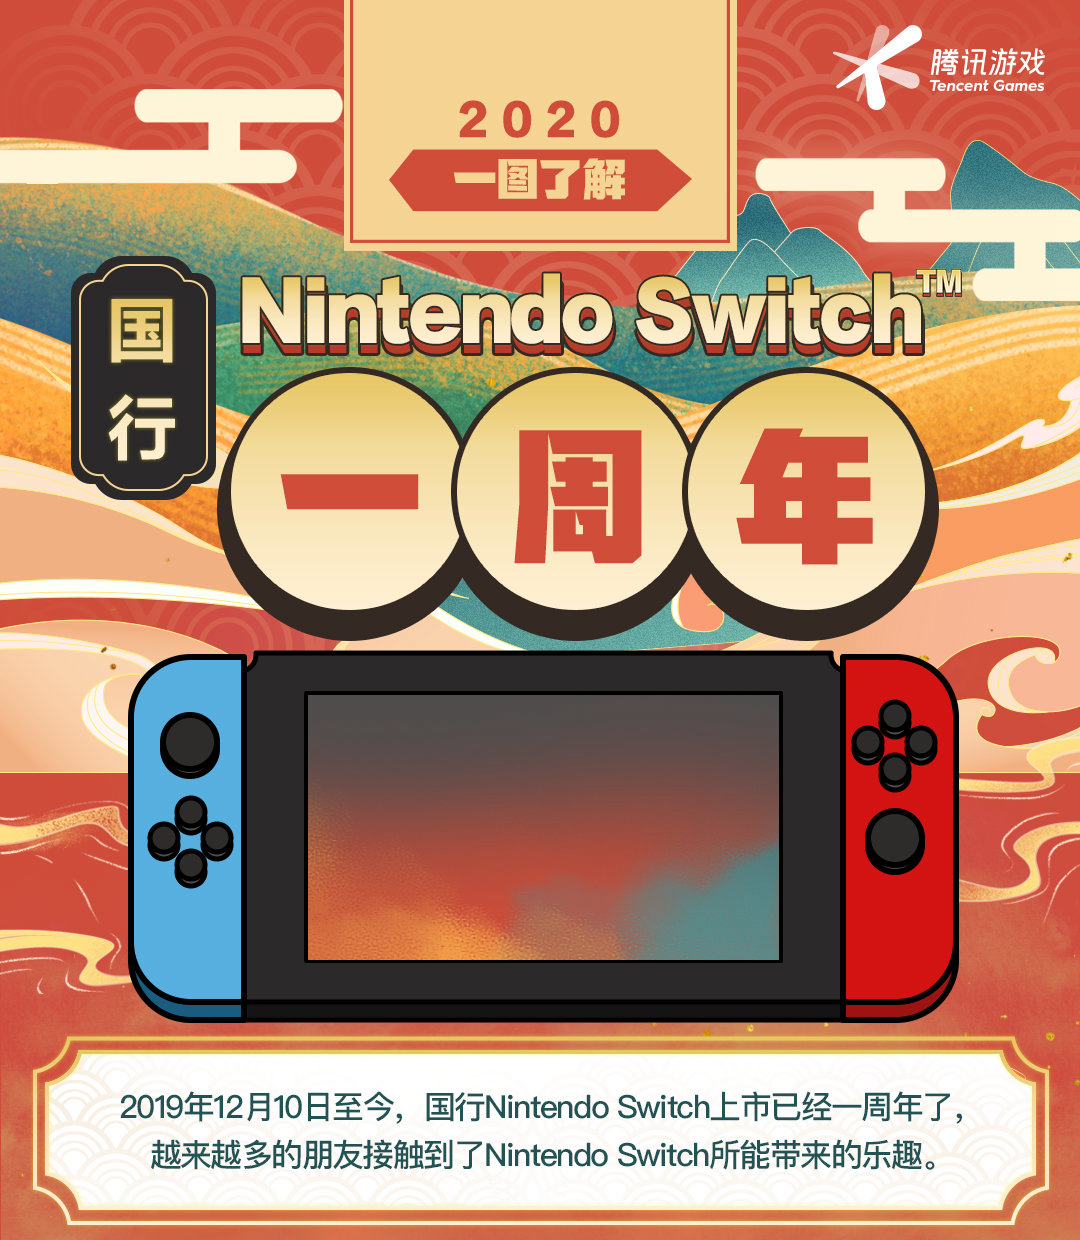 腾讯展现引进Switch1周年功效 共上线12款游戏